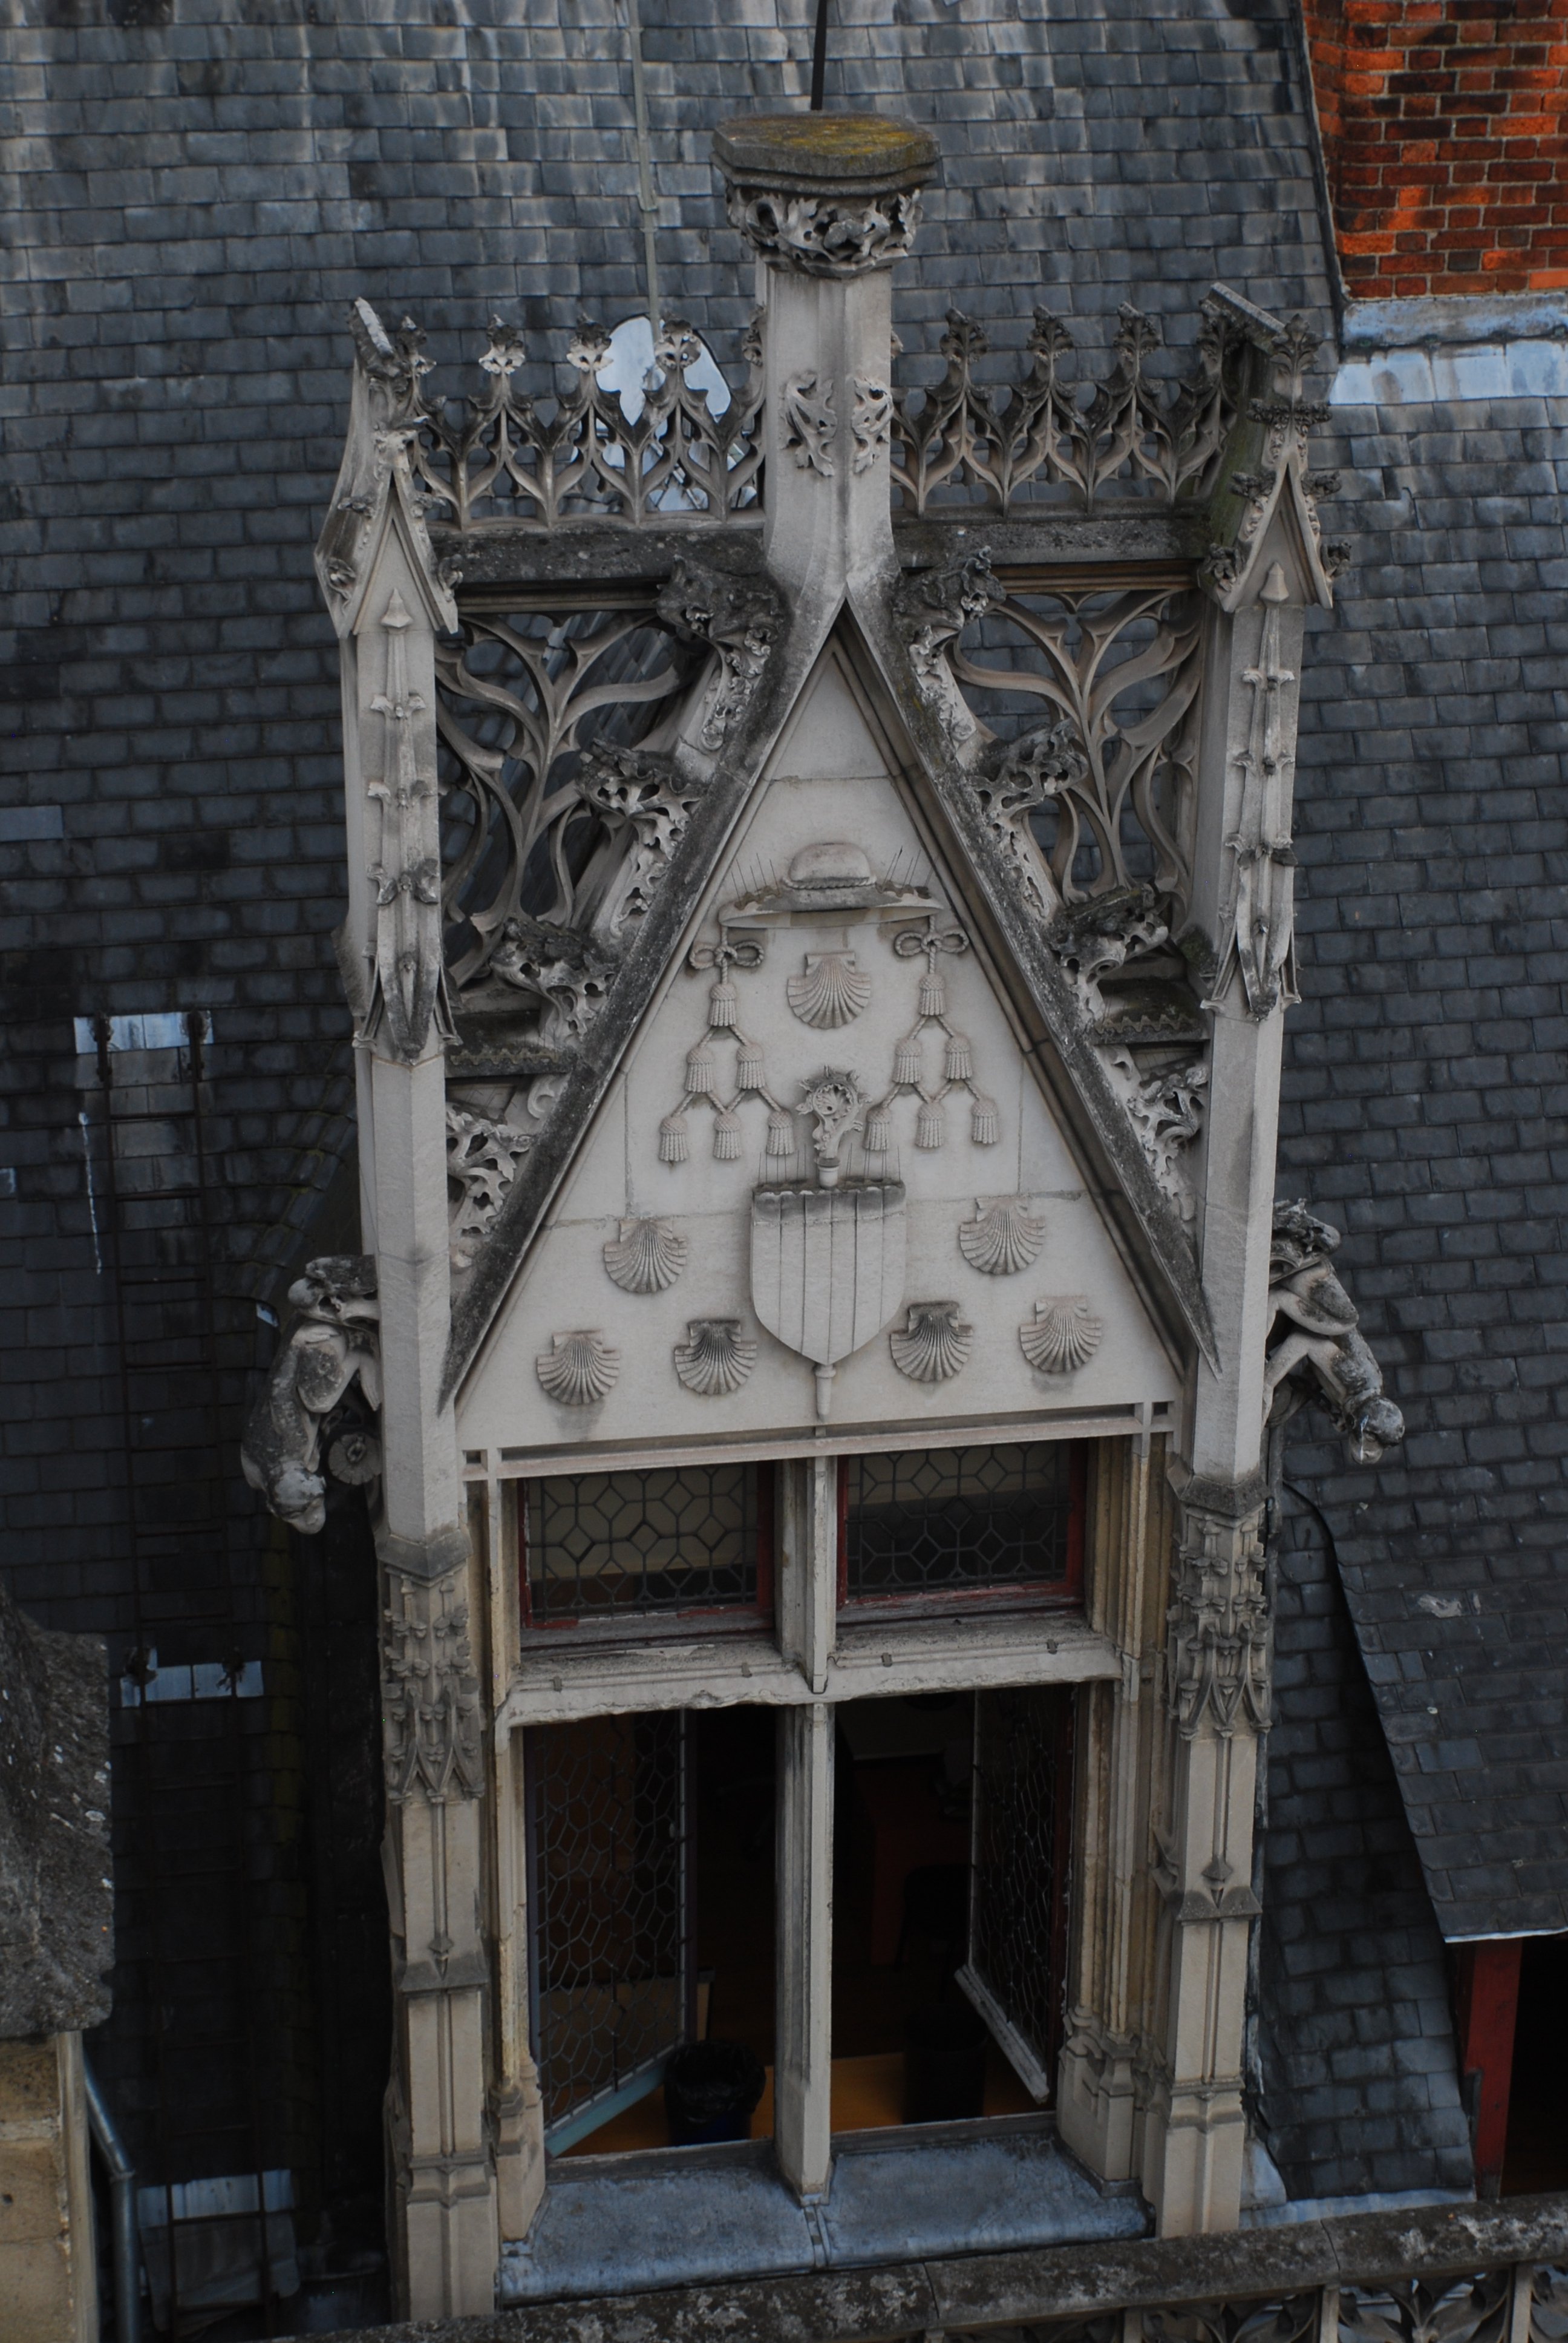 Encadrement de fenêtre de l’hôtel de Cluny au niveau des toits. Elles est surmontée d'un fronton triangulaire en pierre où figure un écu palé surmonté d’un chapeau d’évêque et entouré par des coquilles Saint-Jacques. Les bords supérieurs du fronton portent des motifs de feuille de houx, et des grotesques émergent des montants verticaux sur les côtés. La fenêtre elle-même est divisée en quatre par des meneaux en pierre en forme de croix latine.